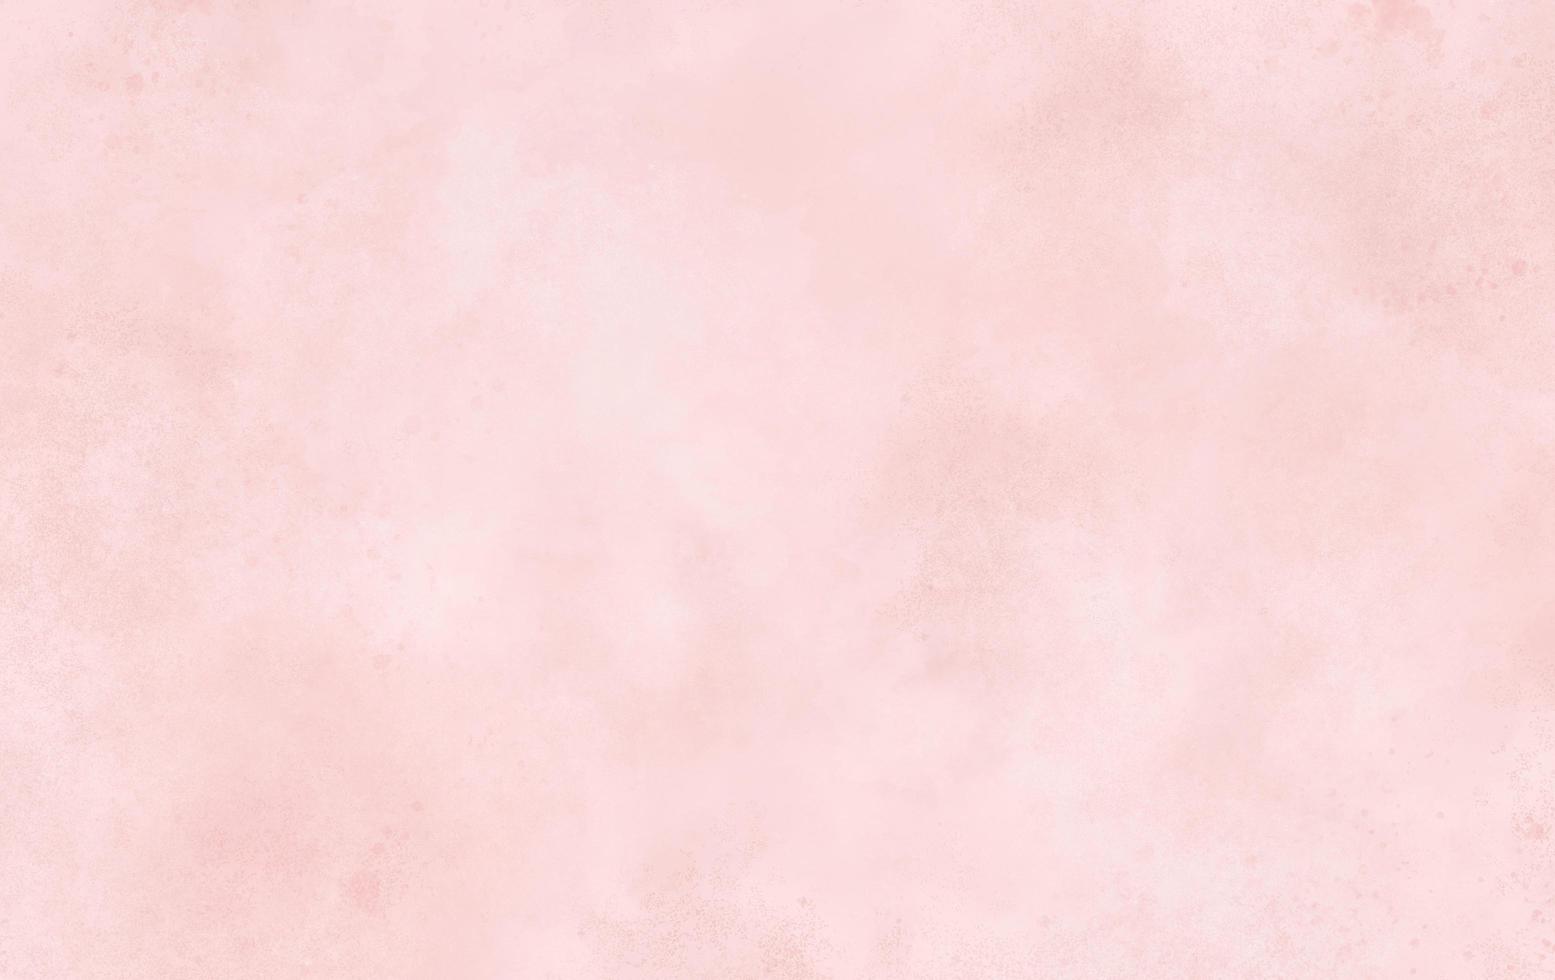 texture de fond de papier pastel rose abstrait, couleur pastel, tableau de peinture marbrée à l'aquarelle. texture stylisée rugueuse d'art concret, fond pour la conception créative esthétique photo